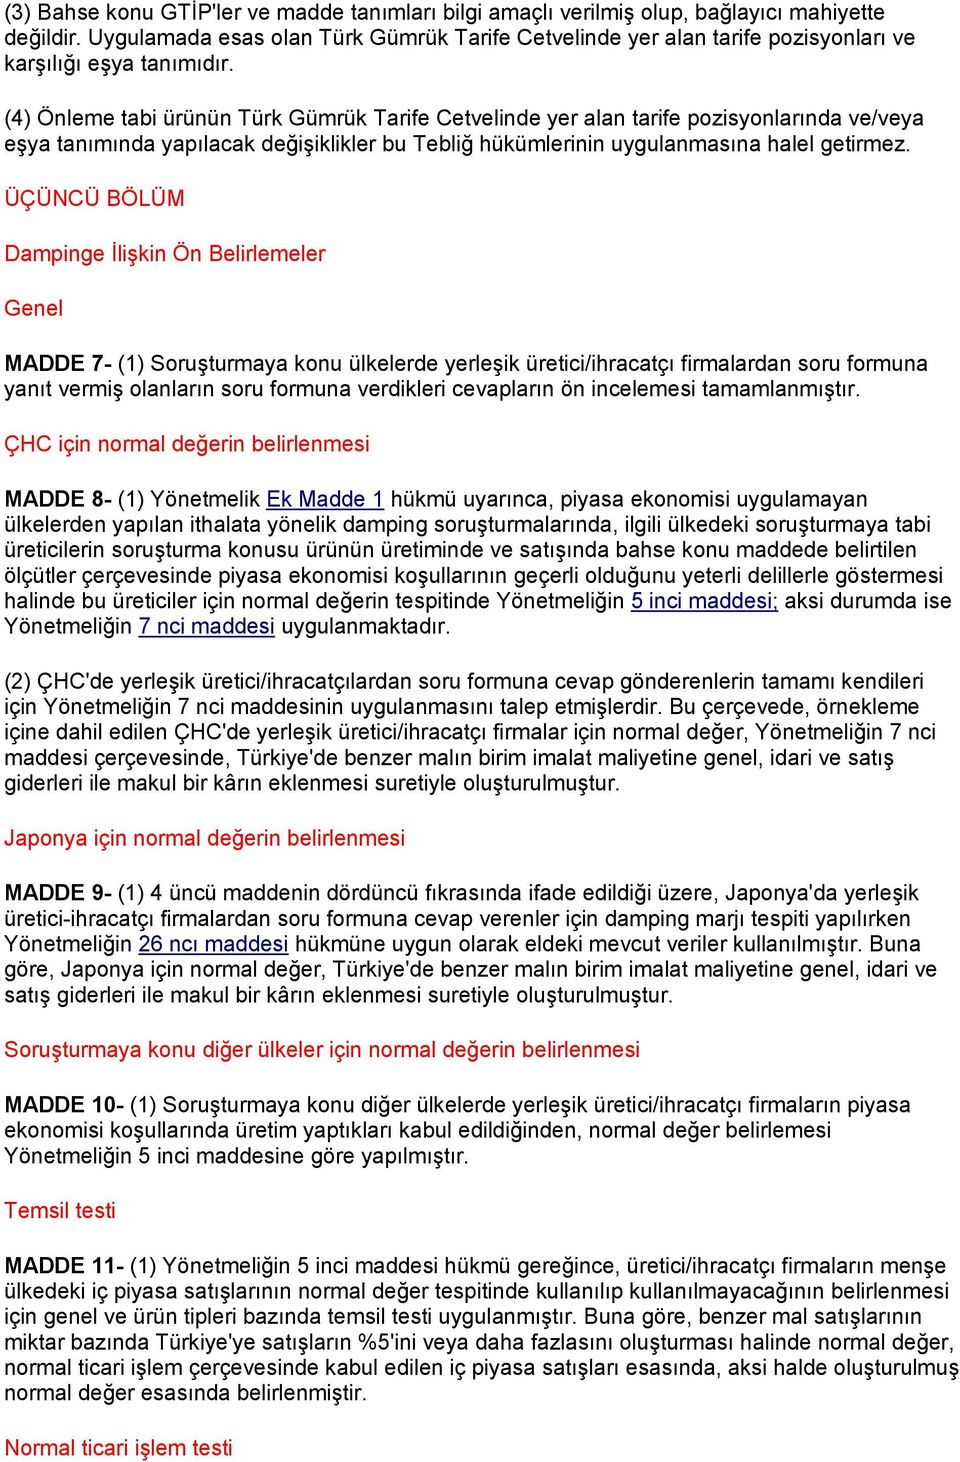 (4) Önleme tabi ürünün Türk Gümrük Tarife Cetvelinde yer alan tarife pozisyonlarında ve/veya eşya tanımında yapılacak değişiklikler bu Tebliğ hükümlerinin uygulanmasına halel getirmez.